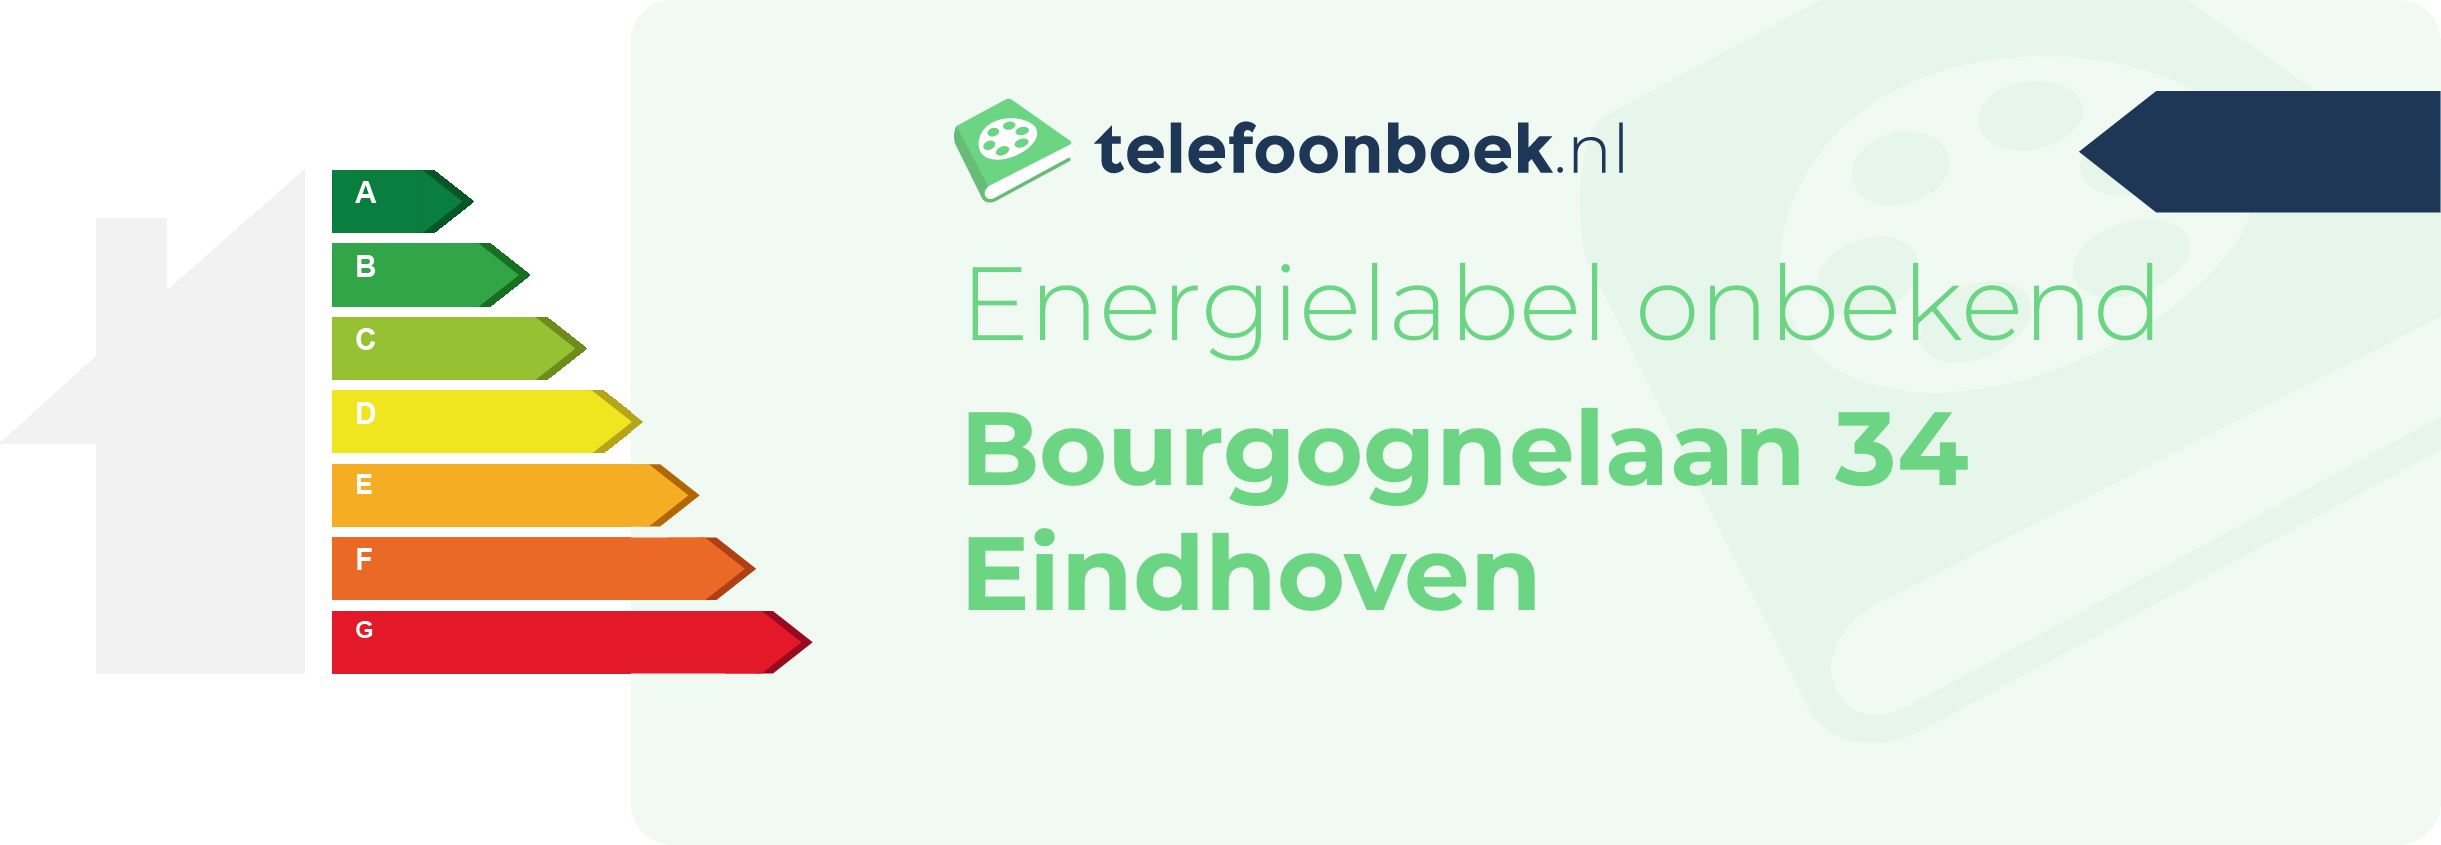 Energielabel Bourgognelaan 34 Eindhoven